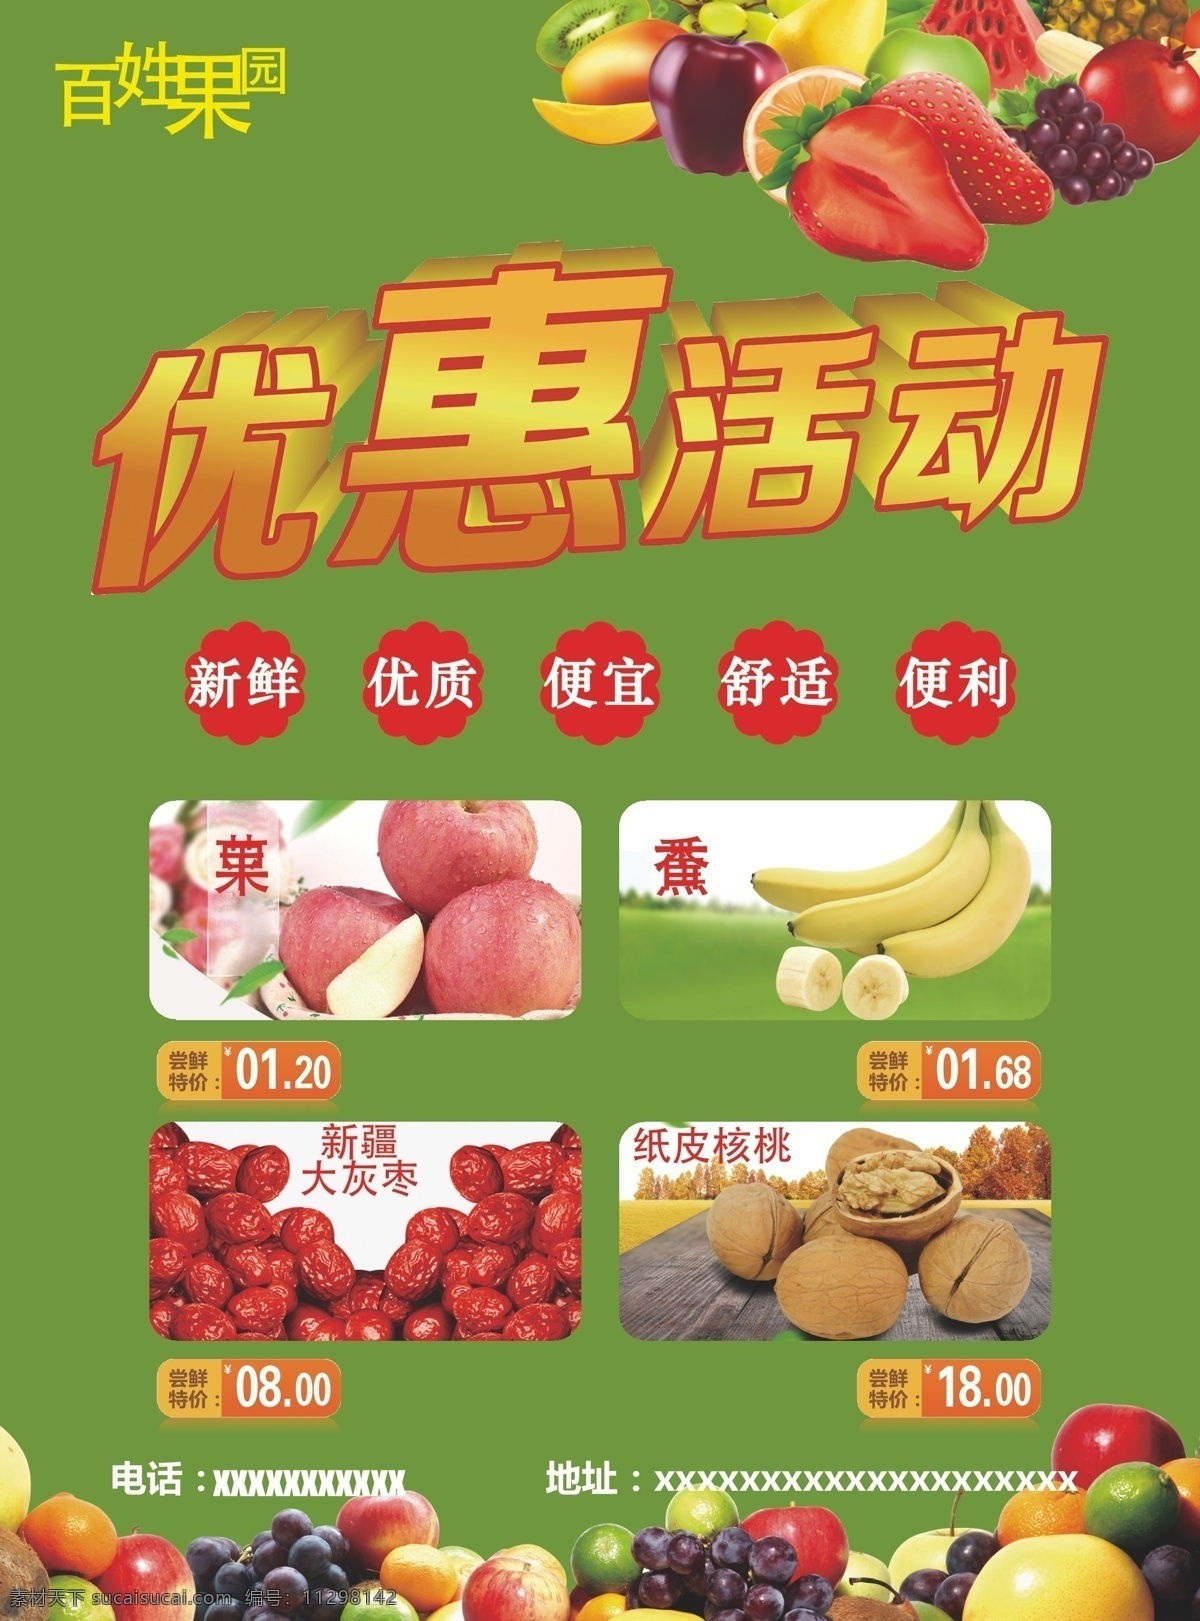 水果 广告 矢量图 dm宣传单 优惠活动 热卖水果 绿色